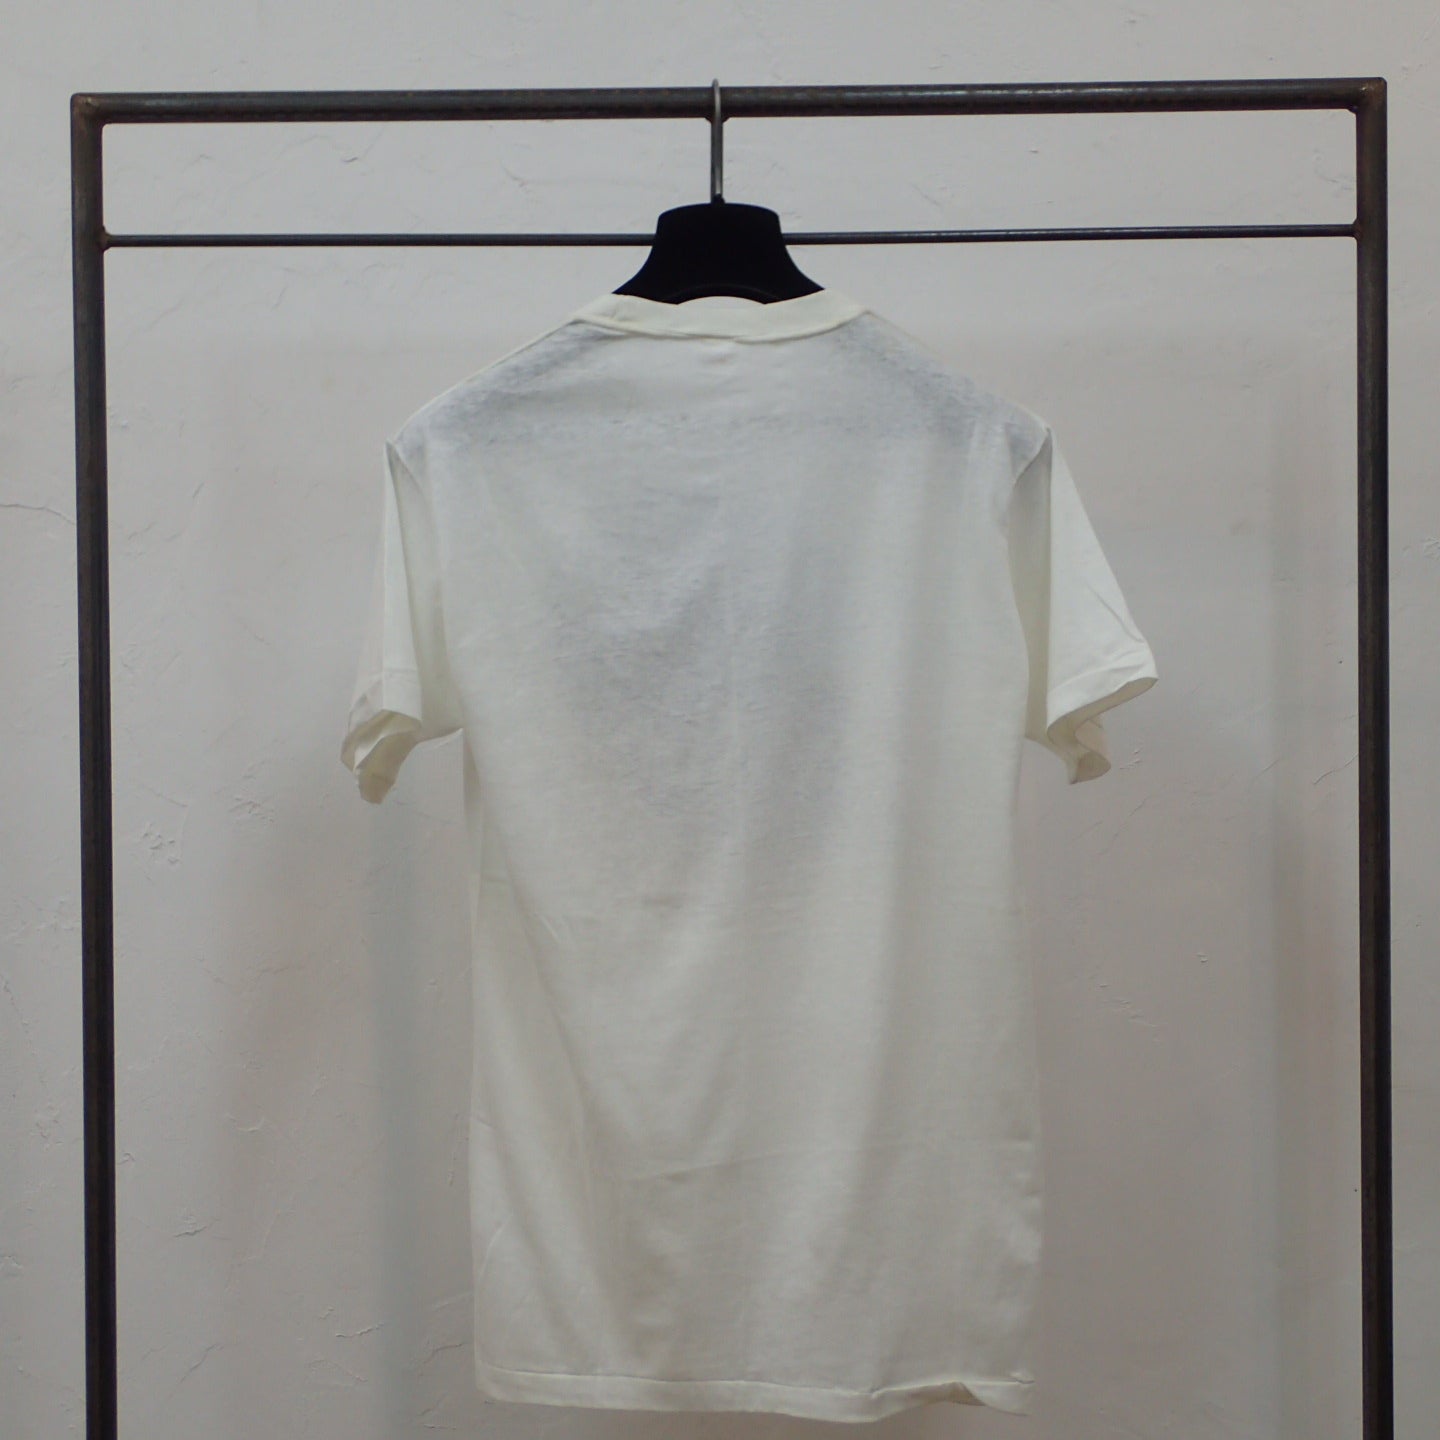 T-shirt KELLEY MOUSE STUDIOS des années 70 « T-shirt MERC »